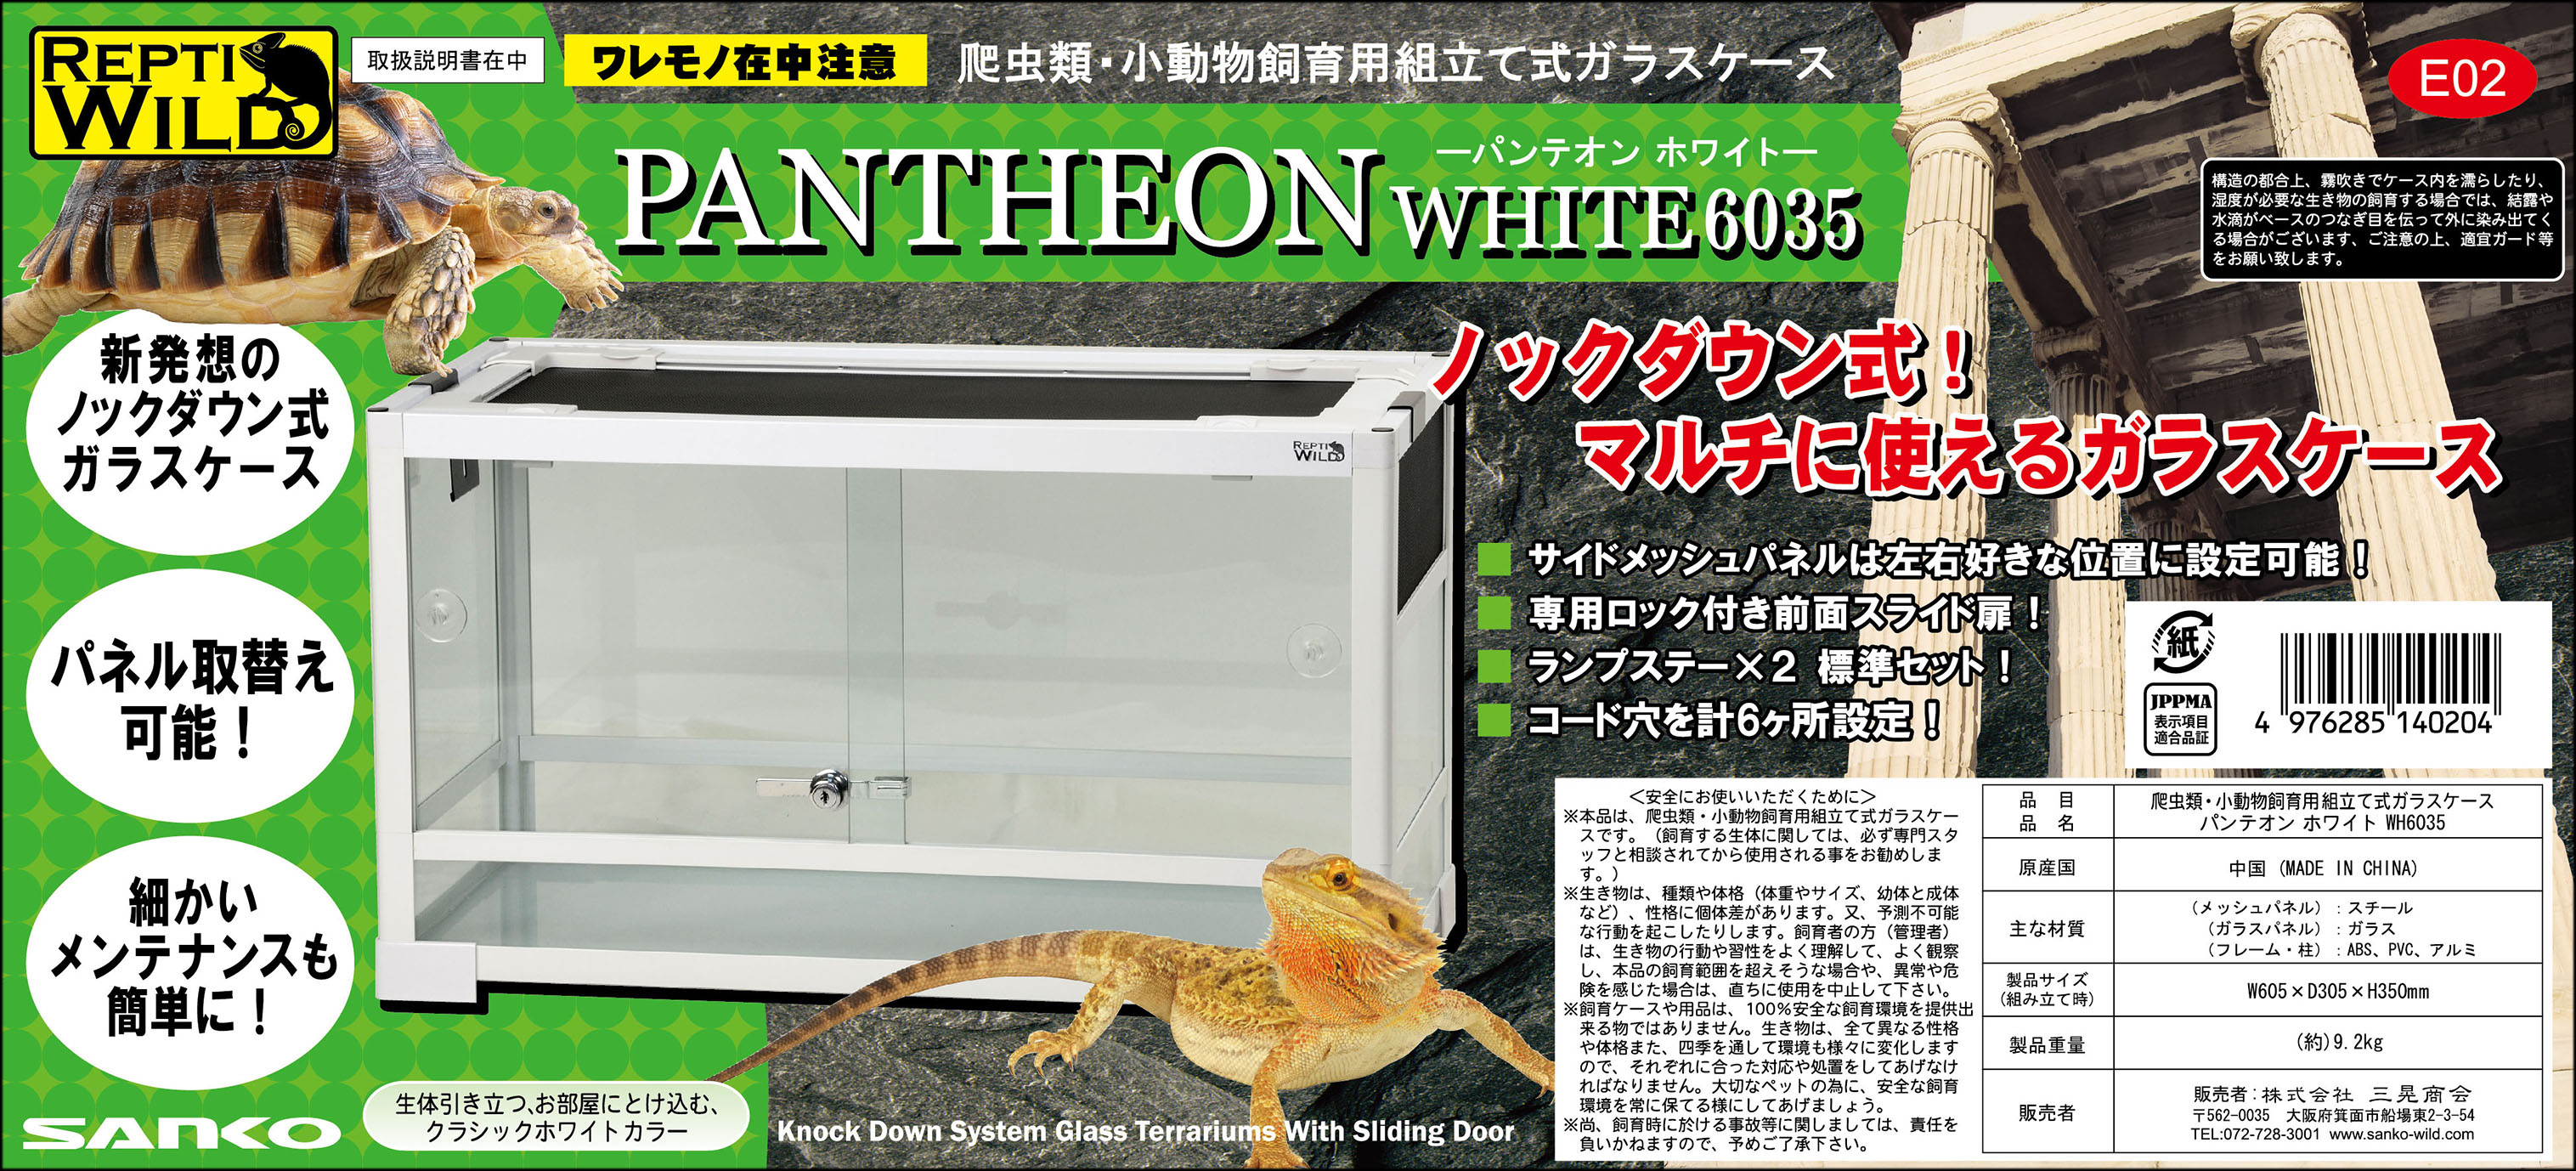 パンテオンホワイトWH6035 SANKO レプティワイルド 販売 通販 爬虫類用